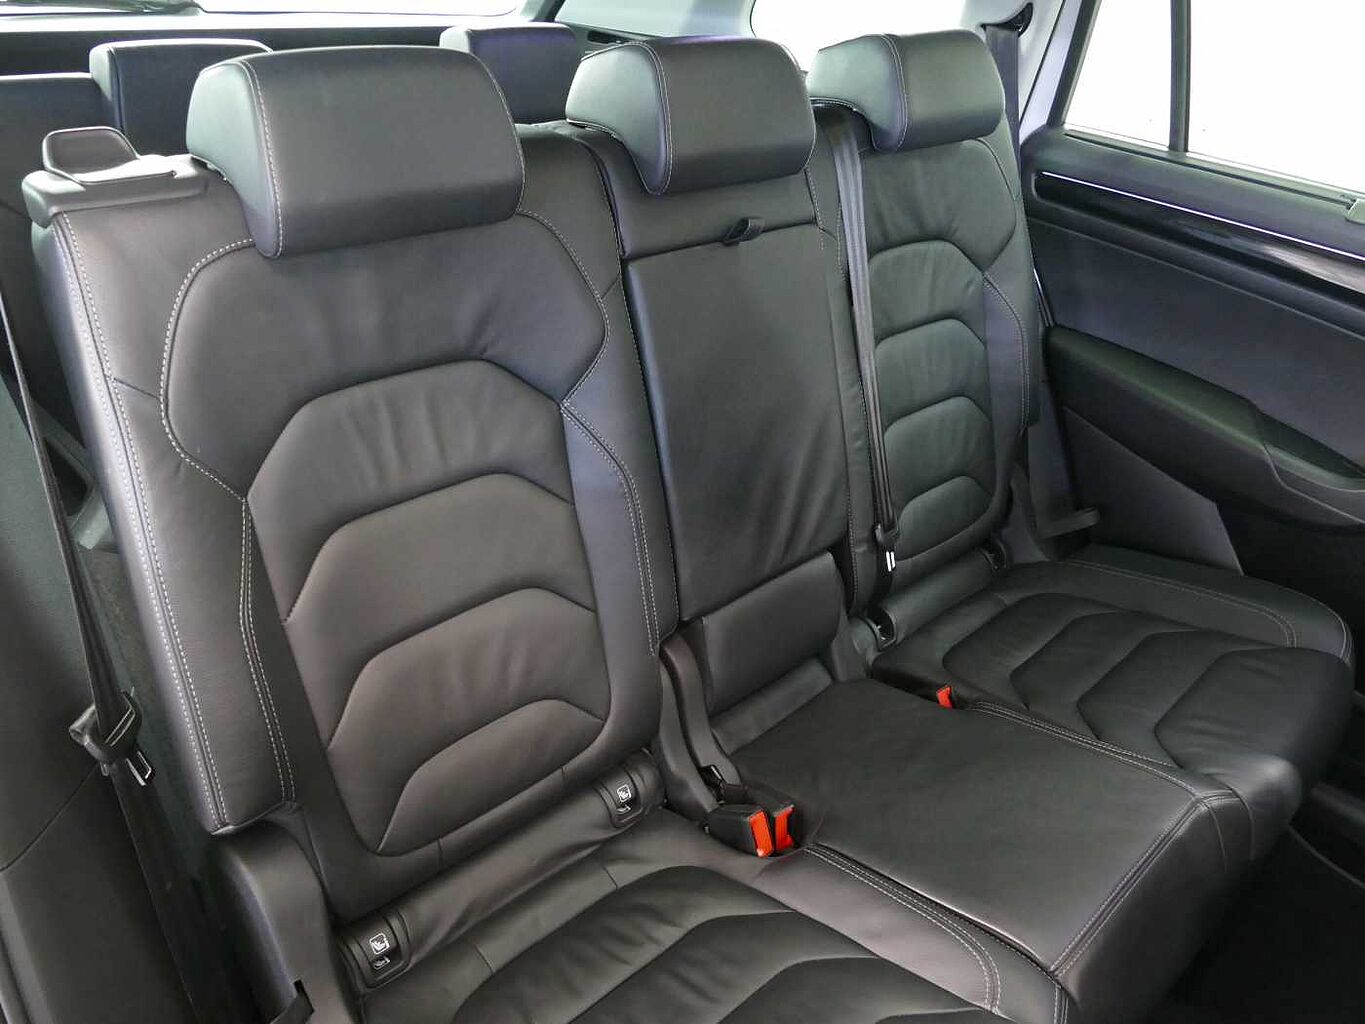 SKODA Kodiaq 2.0 TDI (150ps) Edition (7 Seats) DSG SUV